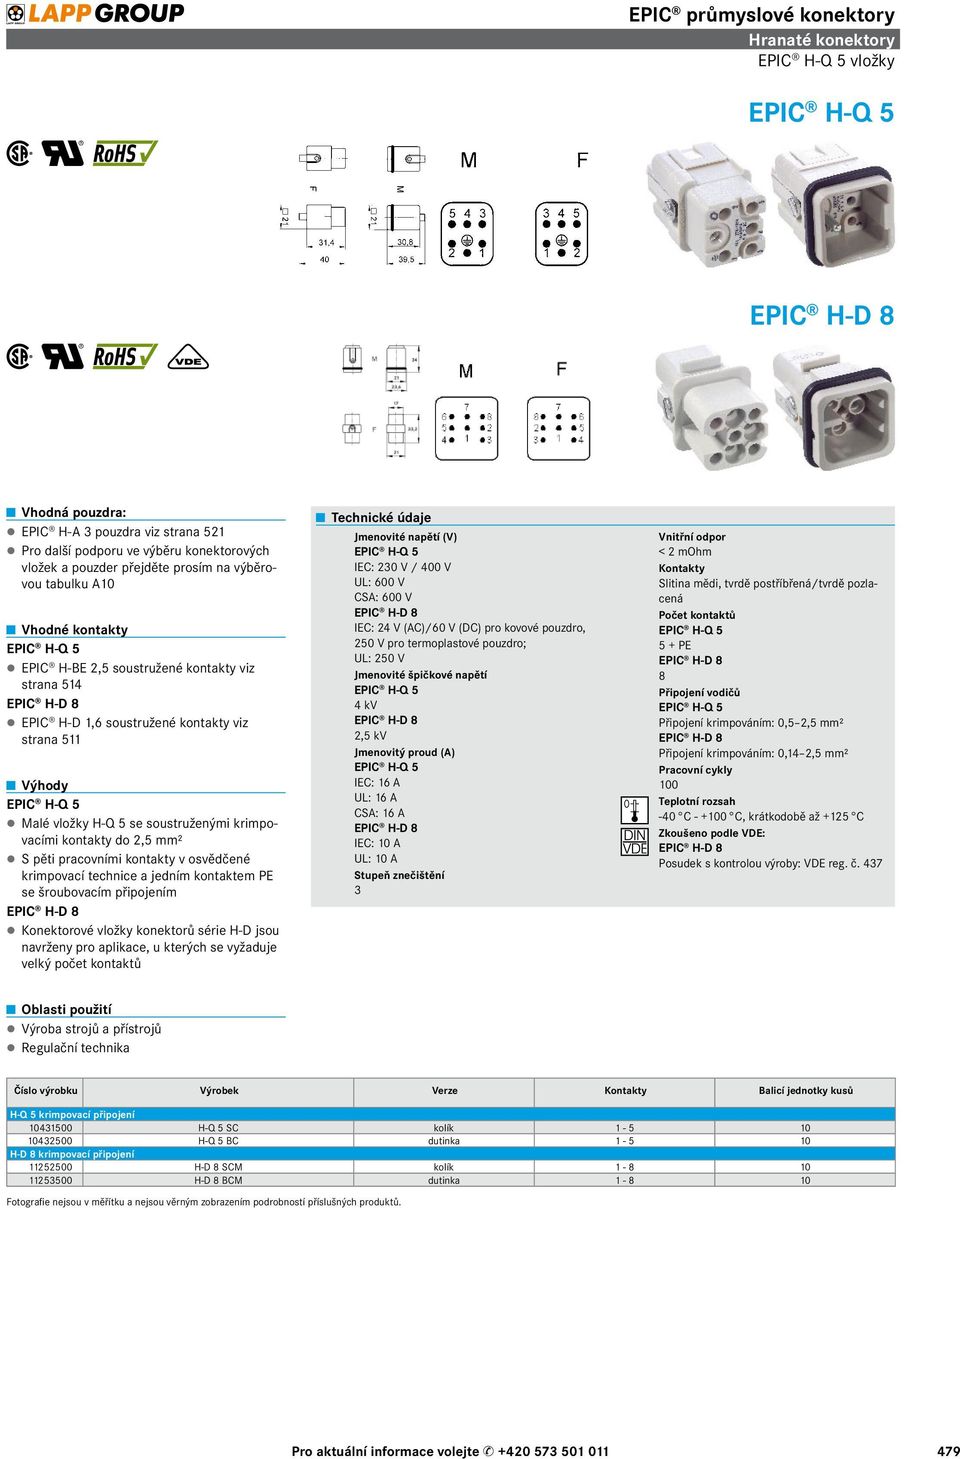 šroubovacím připojením EPIC H-D 8 Konektorové vložky konektorů série H-D jsou navrženy pro aplikace, u kterých se vyžaduje velký počet kontaktů Jmenovité napětí (V) EPIC H-Q 5 IEC: 230 V / 400 V UL: